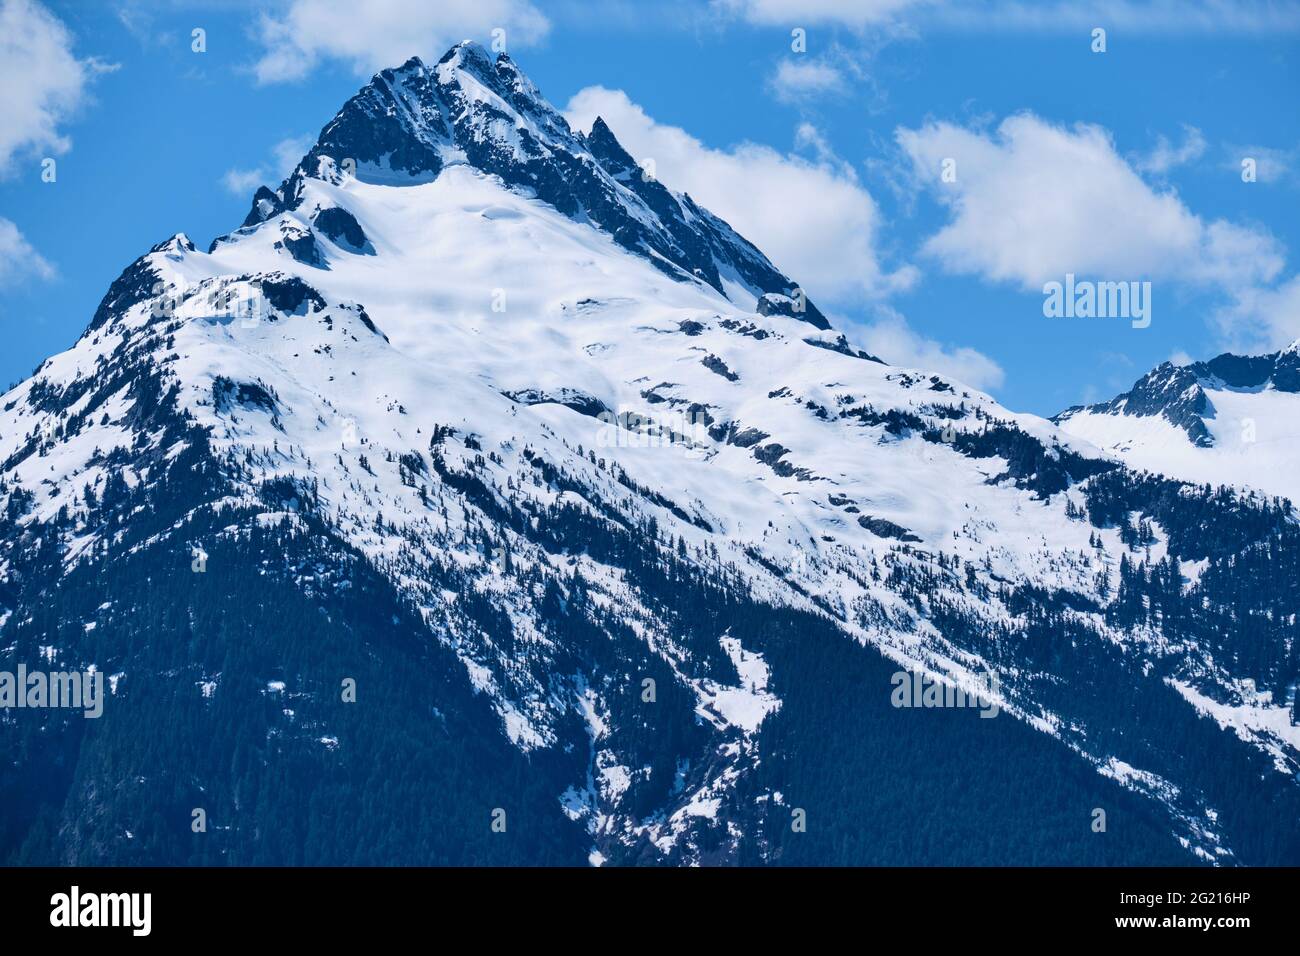 Gros plan sur le sommet de Tantalus Peak avec des affleurements rocheux déchiquetés, de la neige, des glaciers et des sommets de la forêt. Entre Squamish et Whistler, C.-B. Banque D'Images